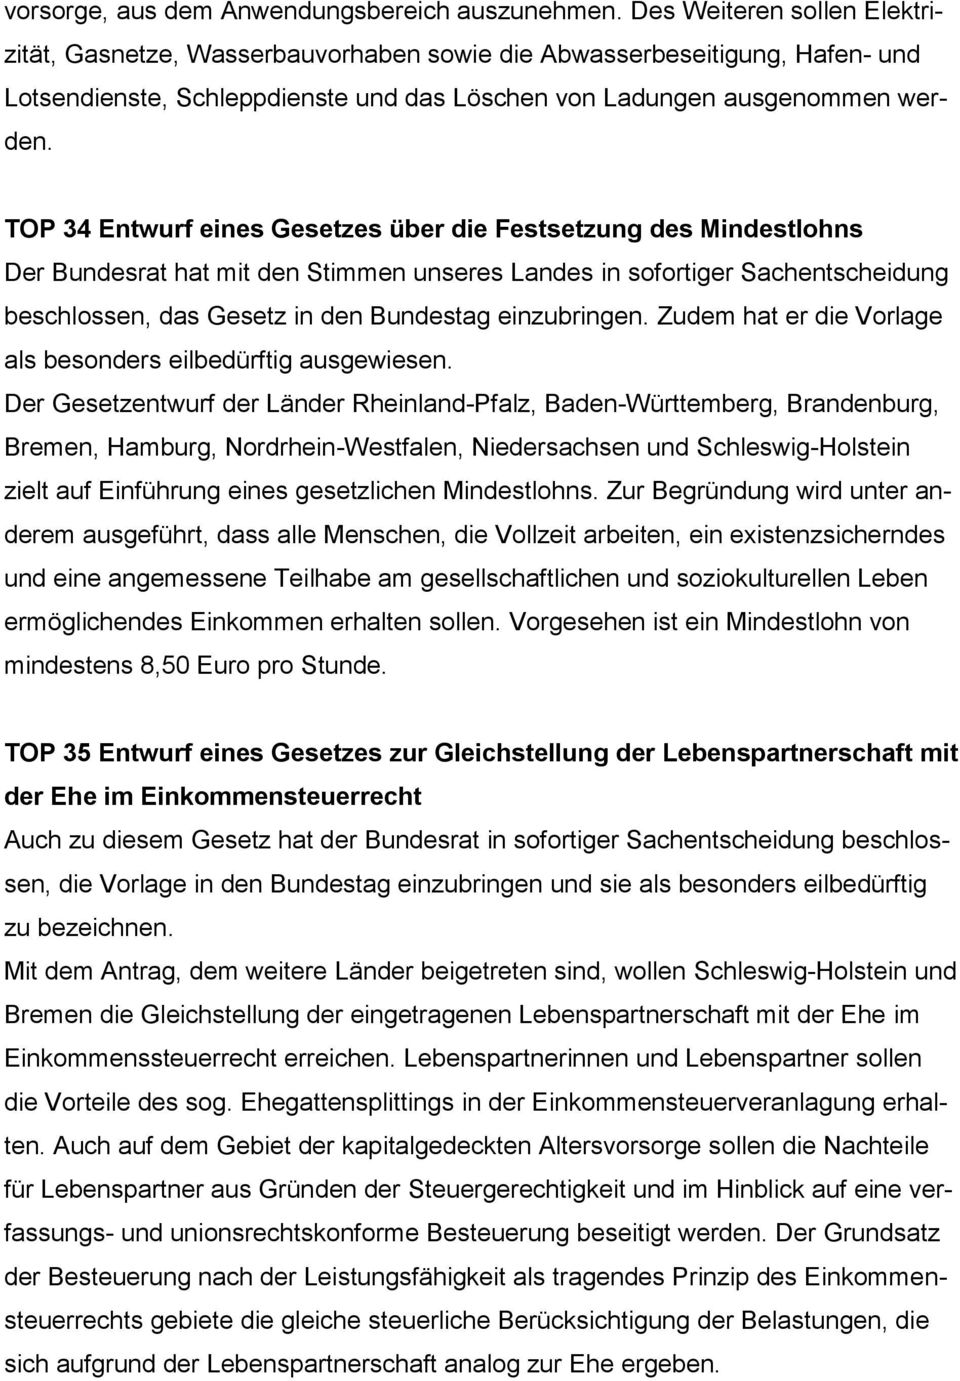 TOP 34 Entwurf eines Gesetzes über die Festsetzung des Mindestlohns Der Bundesrat hat mit den Stimmen unseres Landes in sofortiger Sachentscheidung beschlossen, das Gesetz in den Bundestag